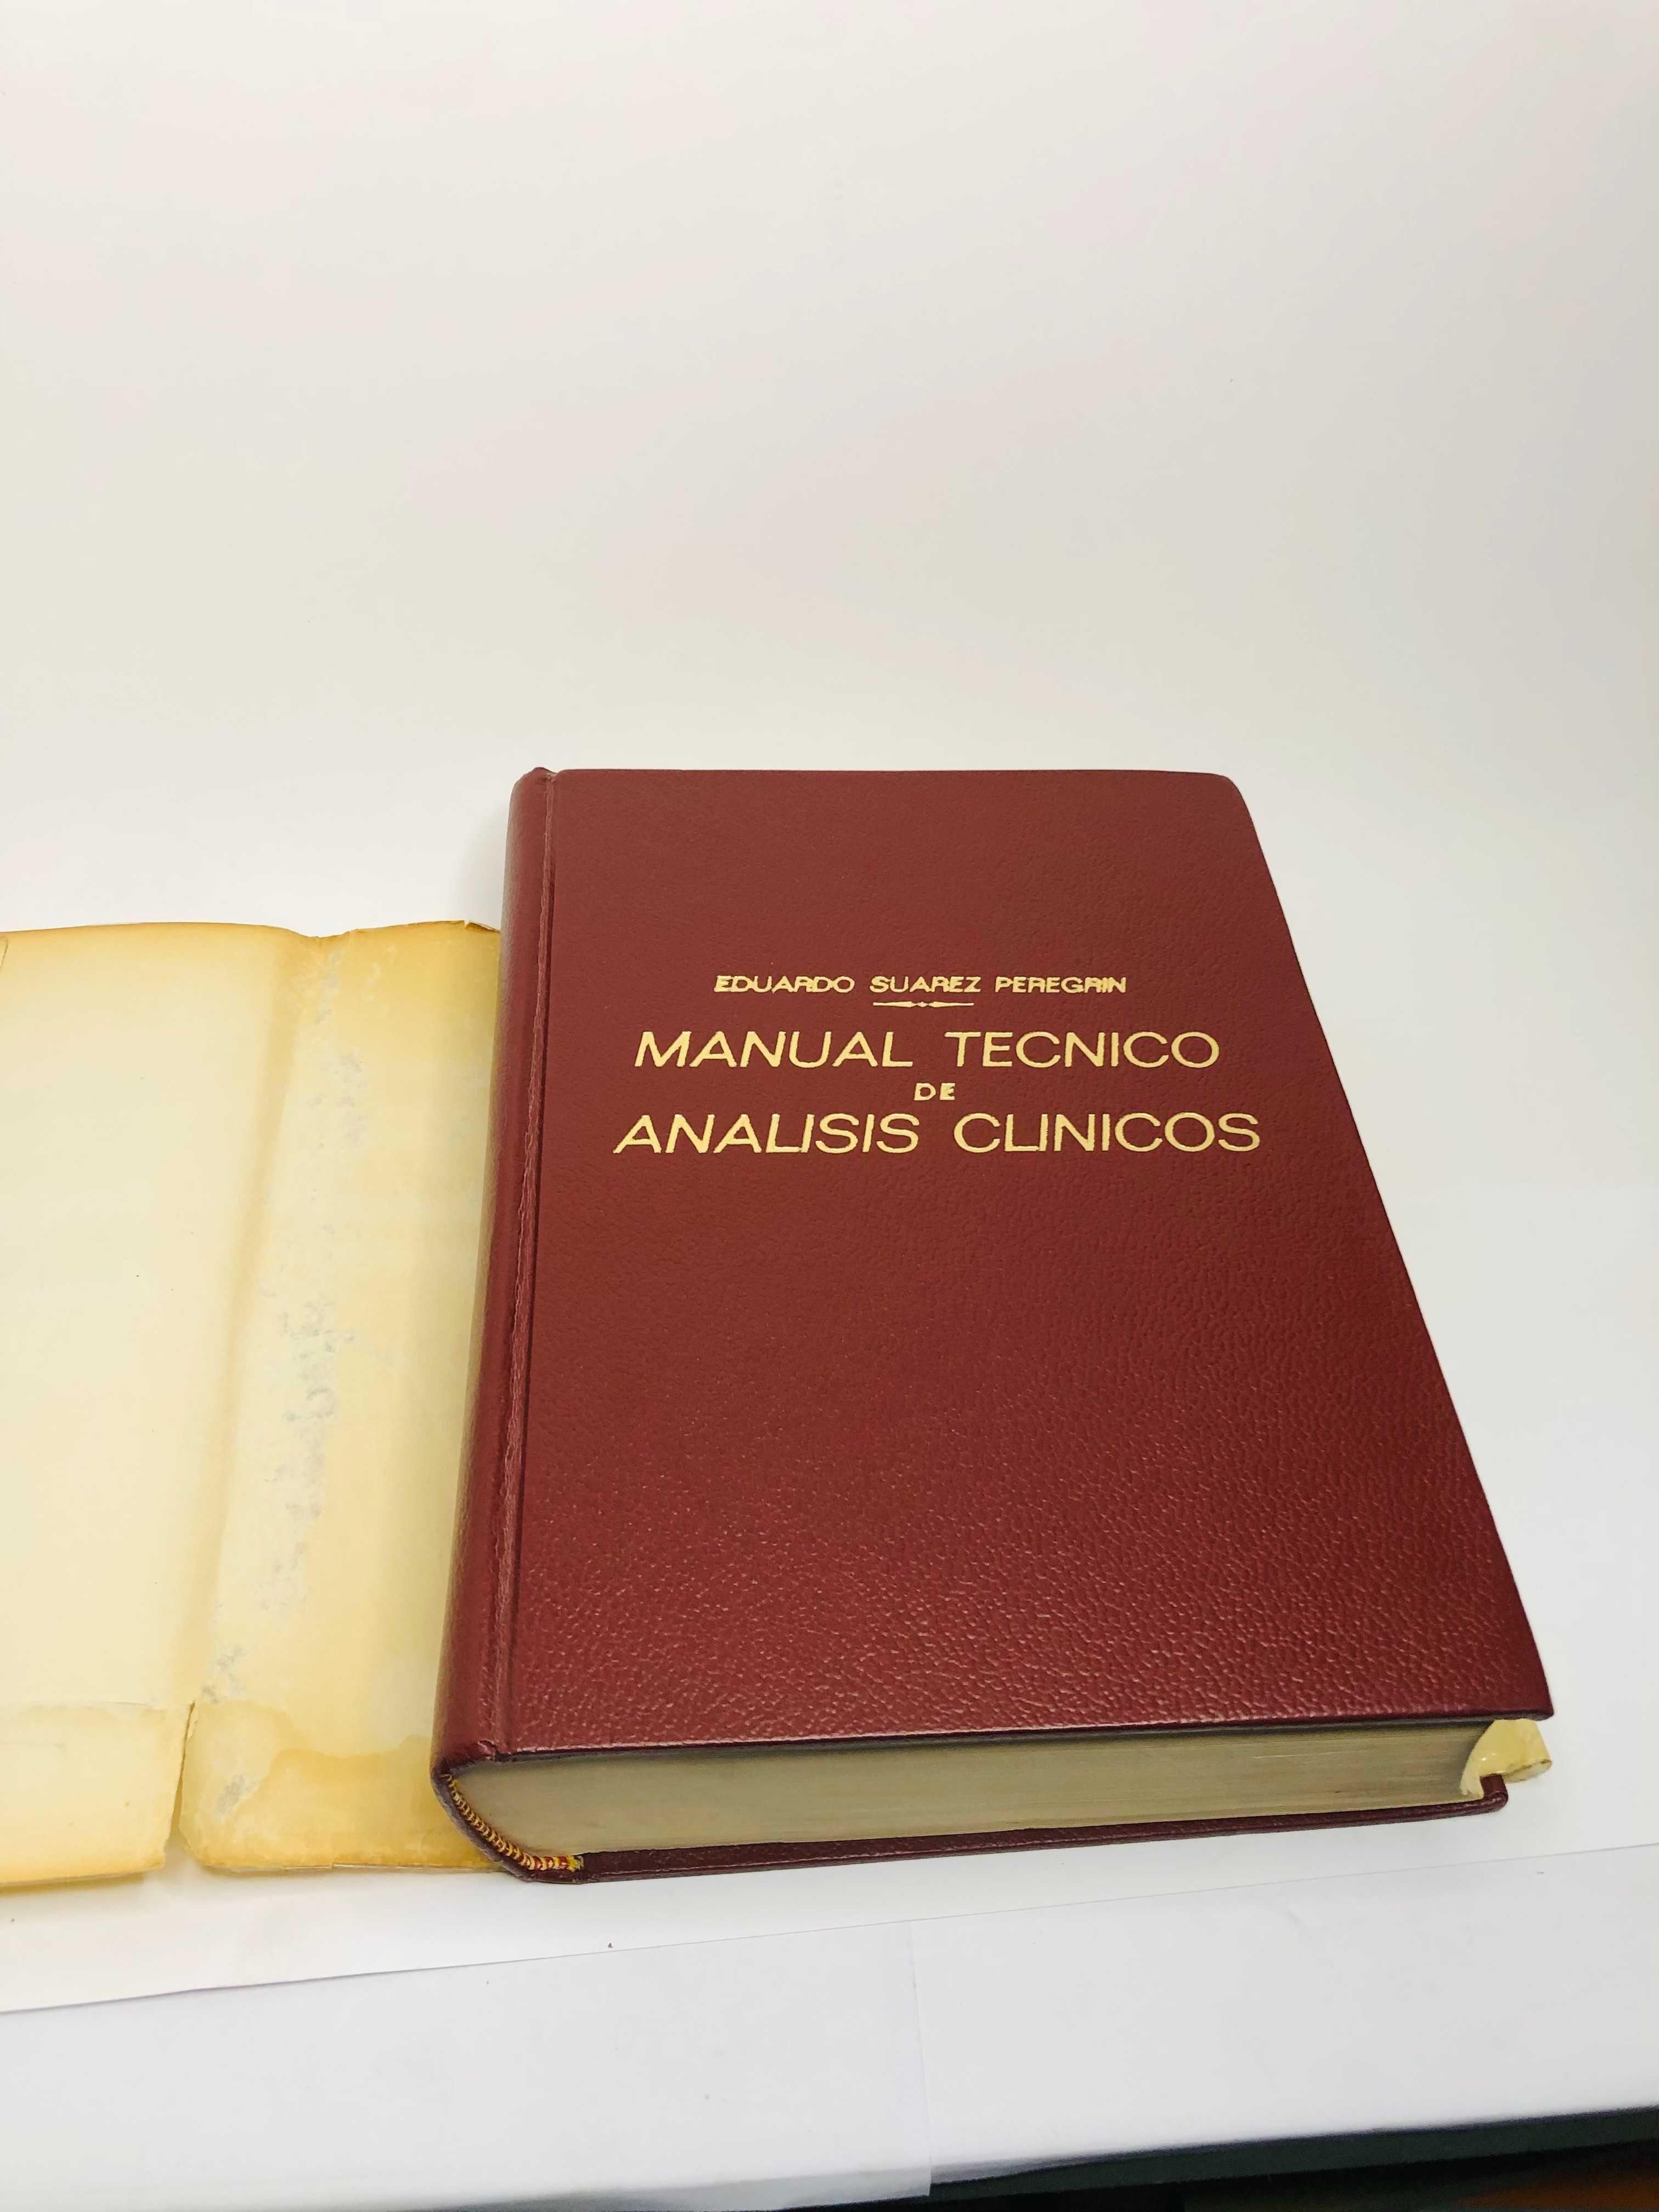 Manual Tecnico de Analisis Clinicos - Eduardo Suarez Peregrin